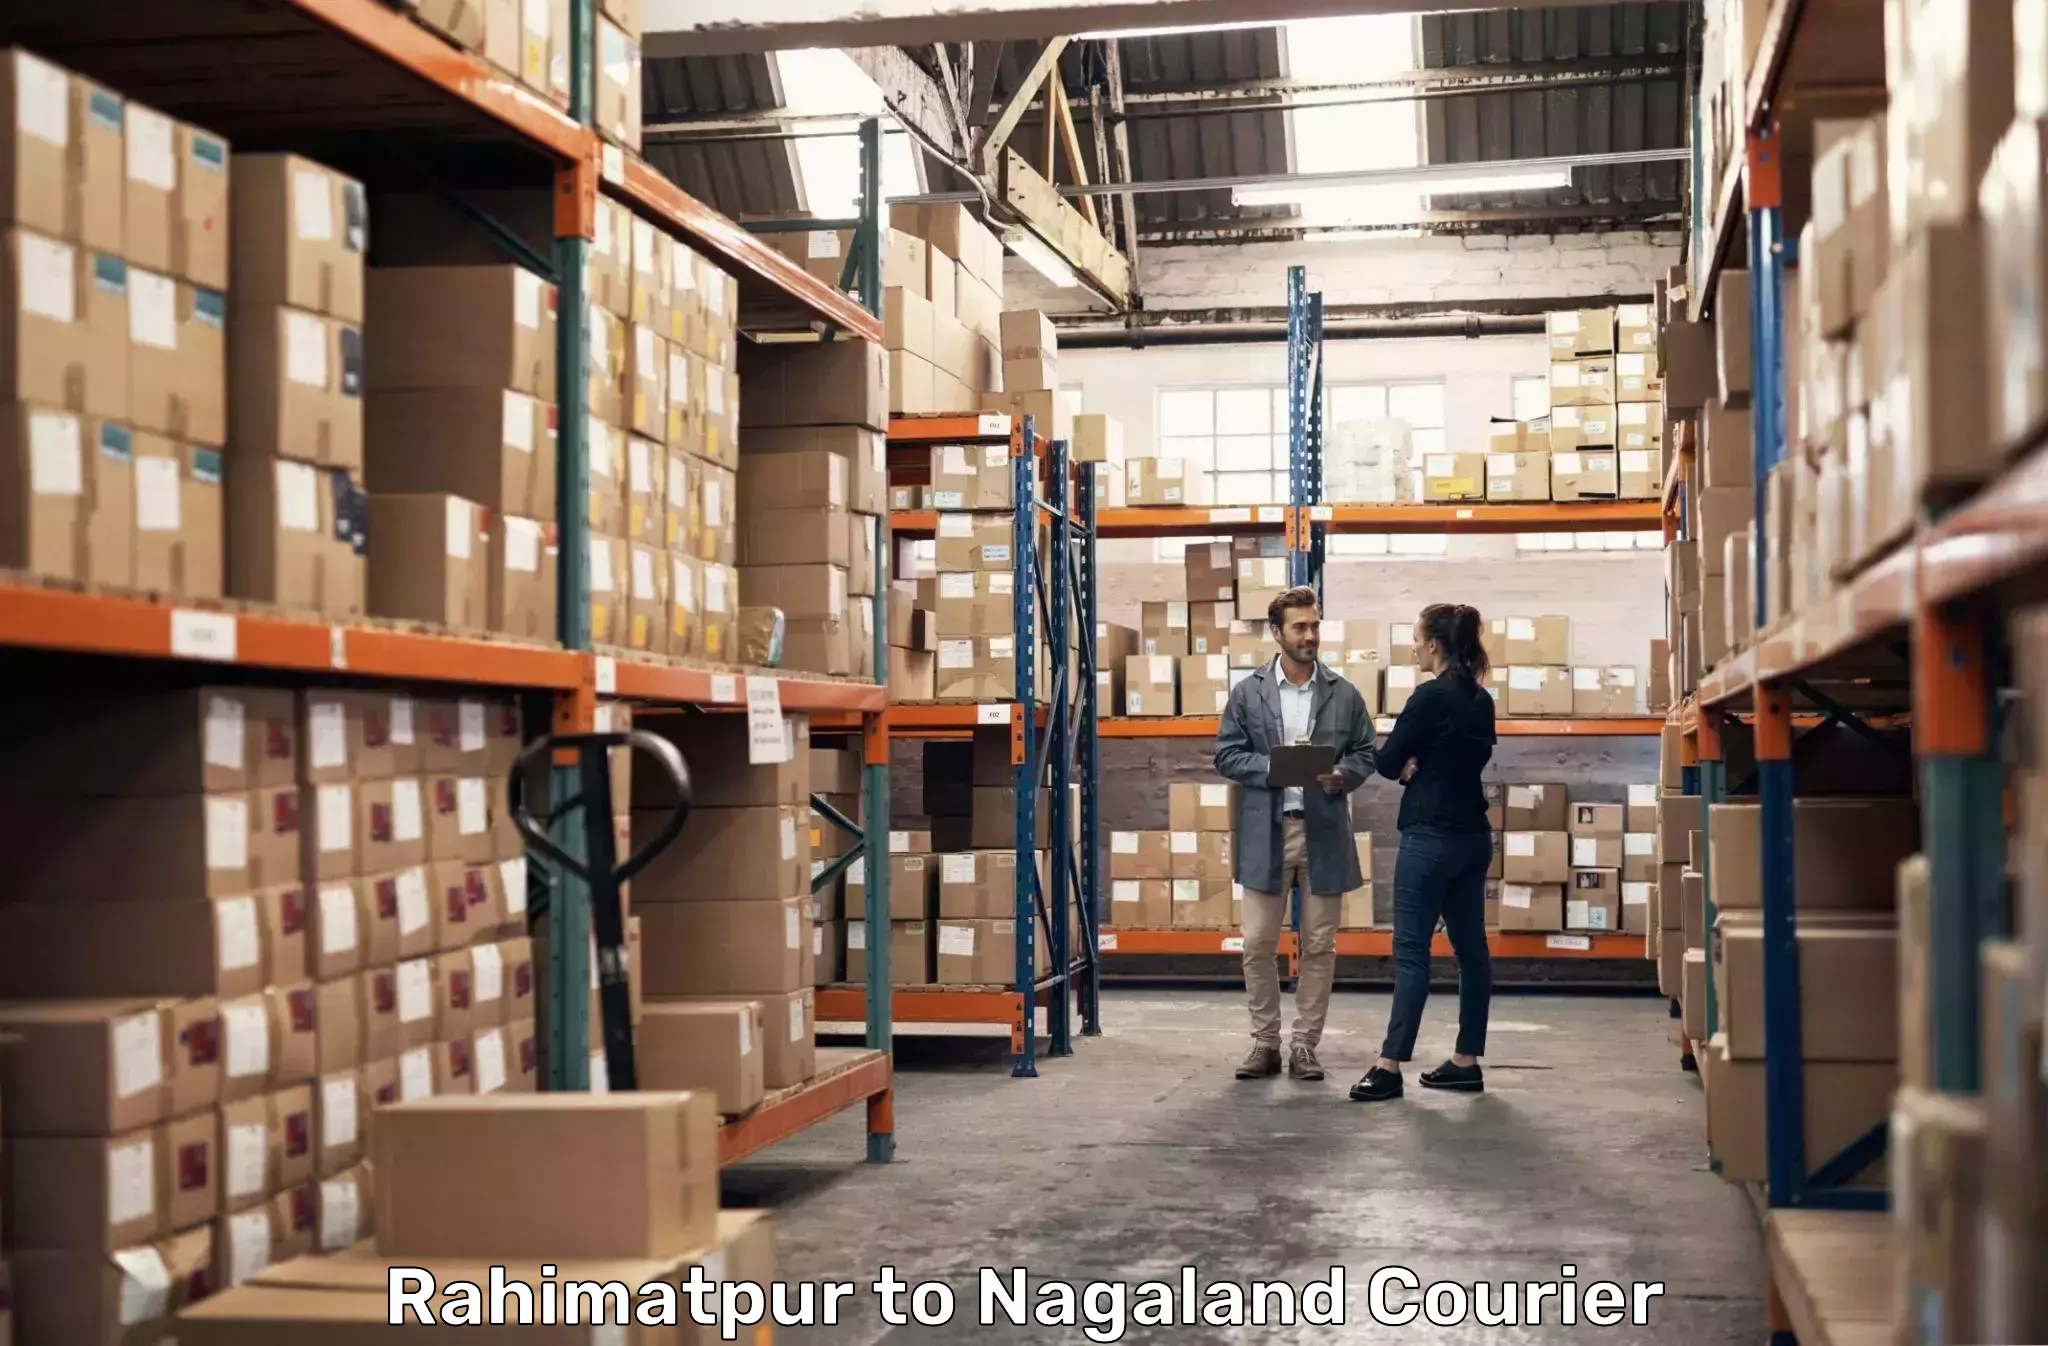 Express courier facilities Rahimatpur to Phek